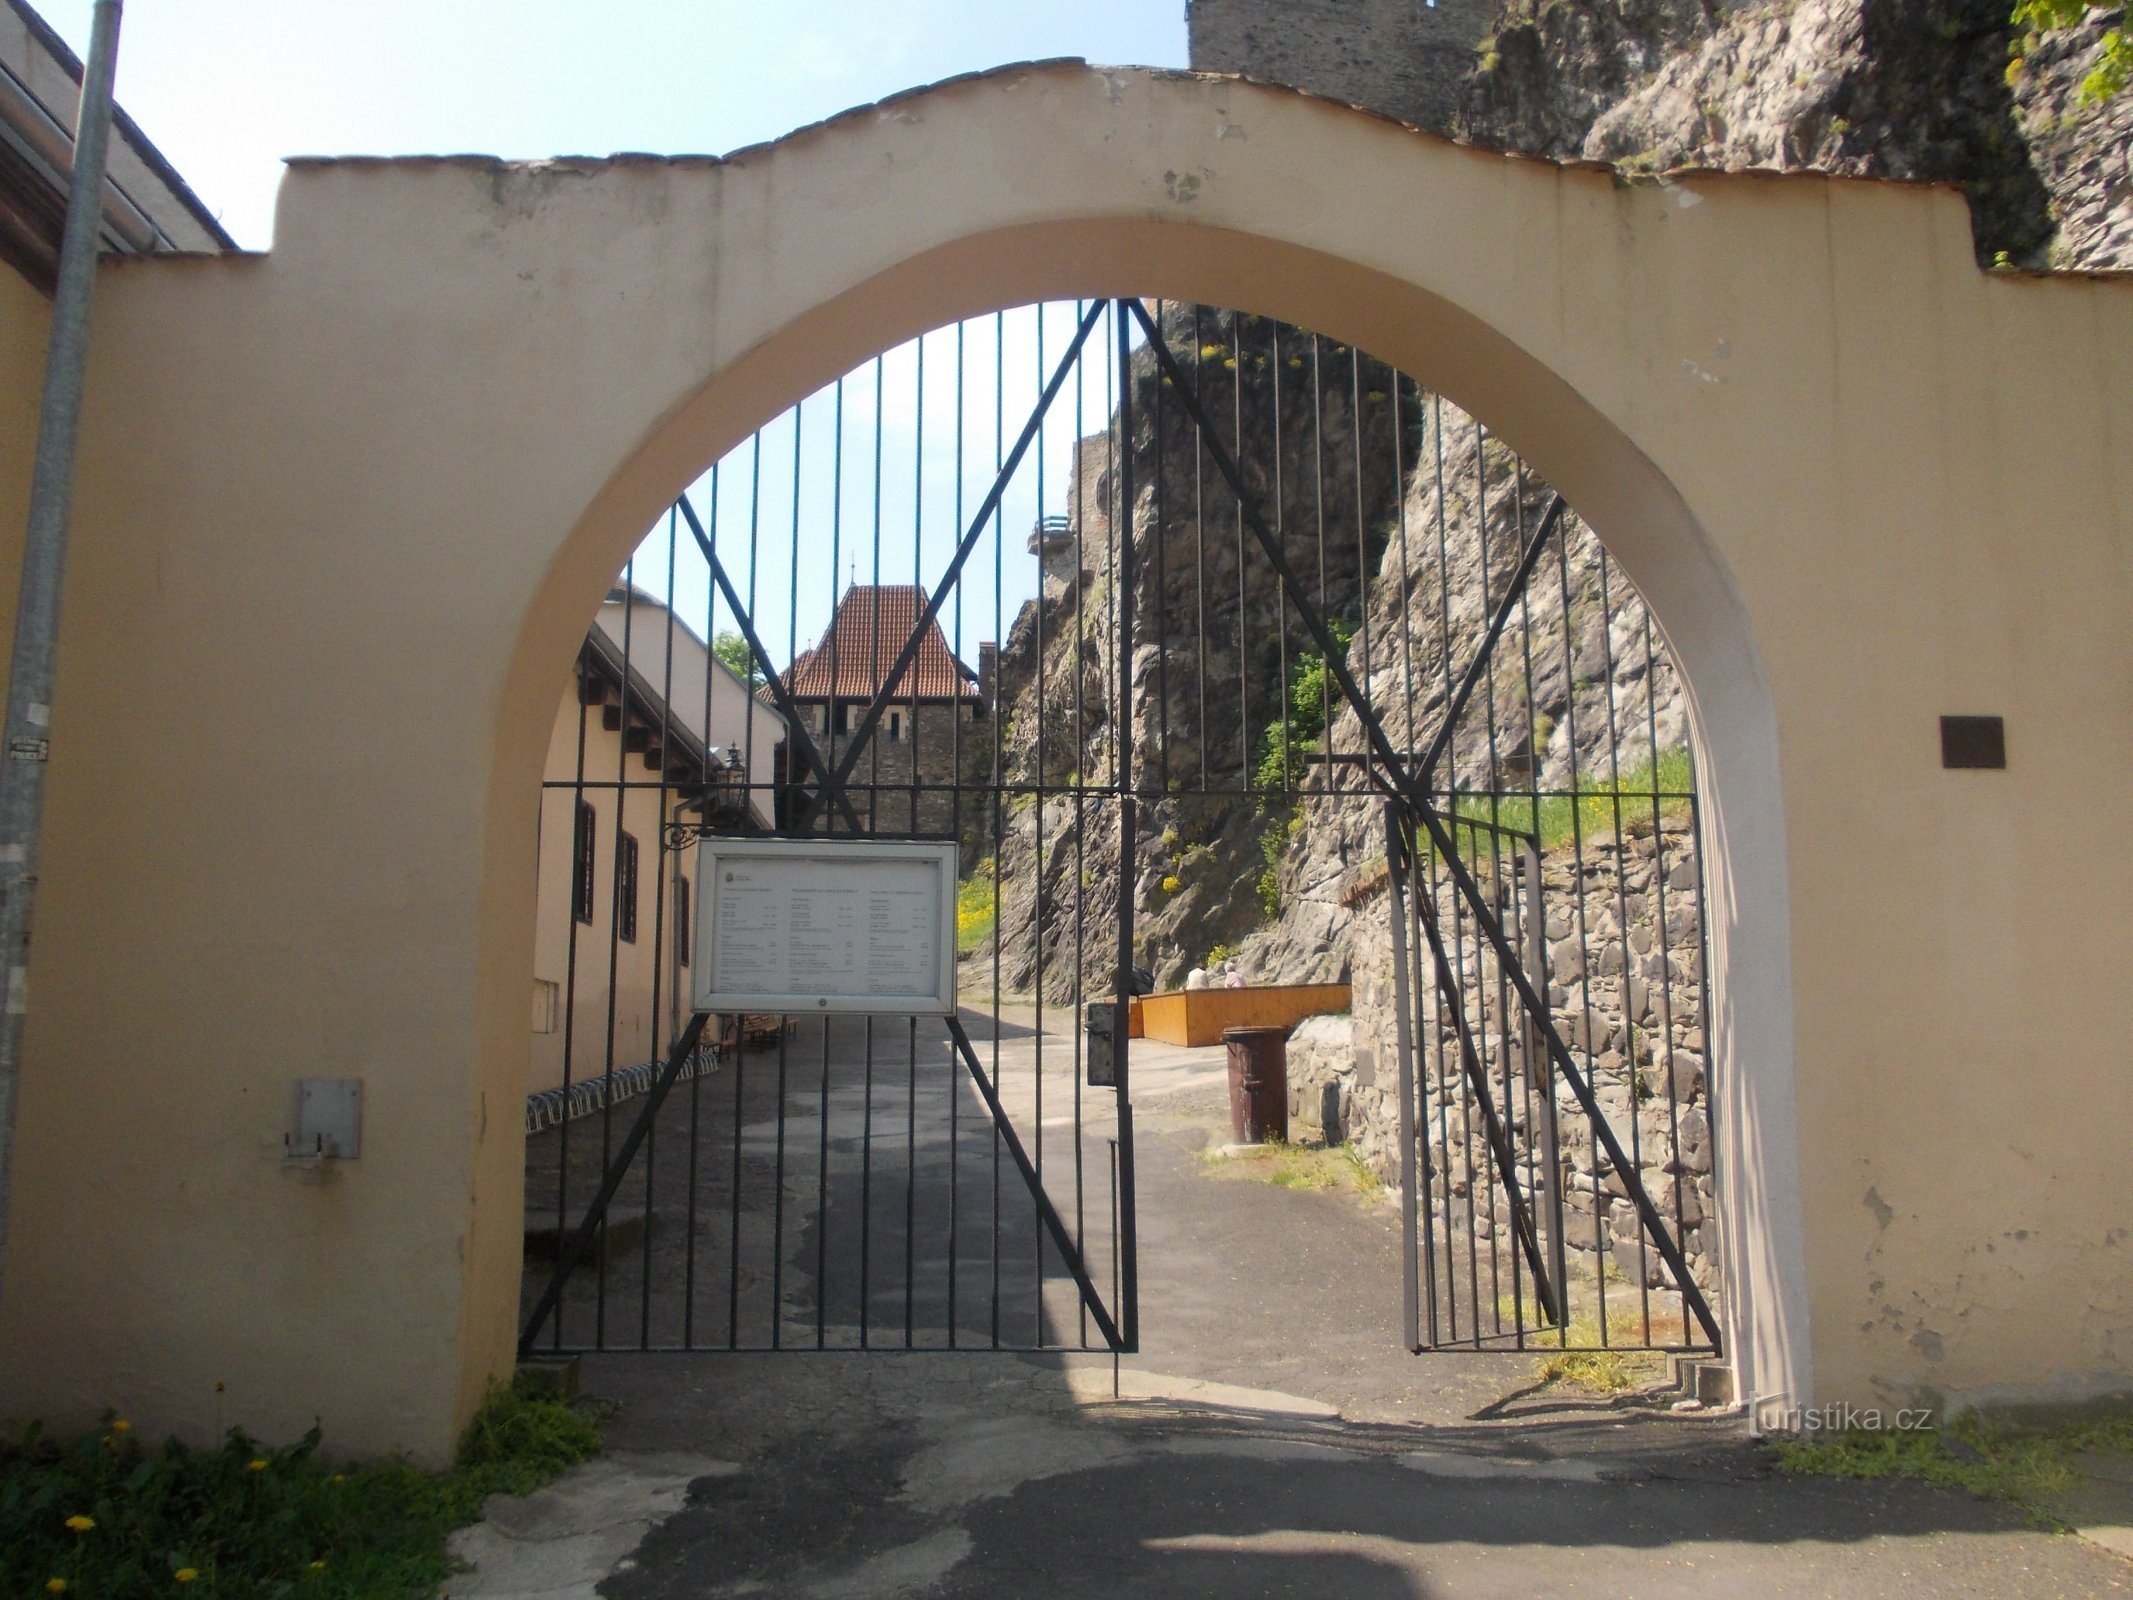 通往城堡场地的大门